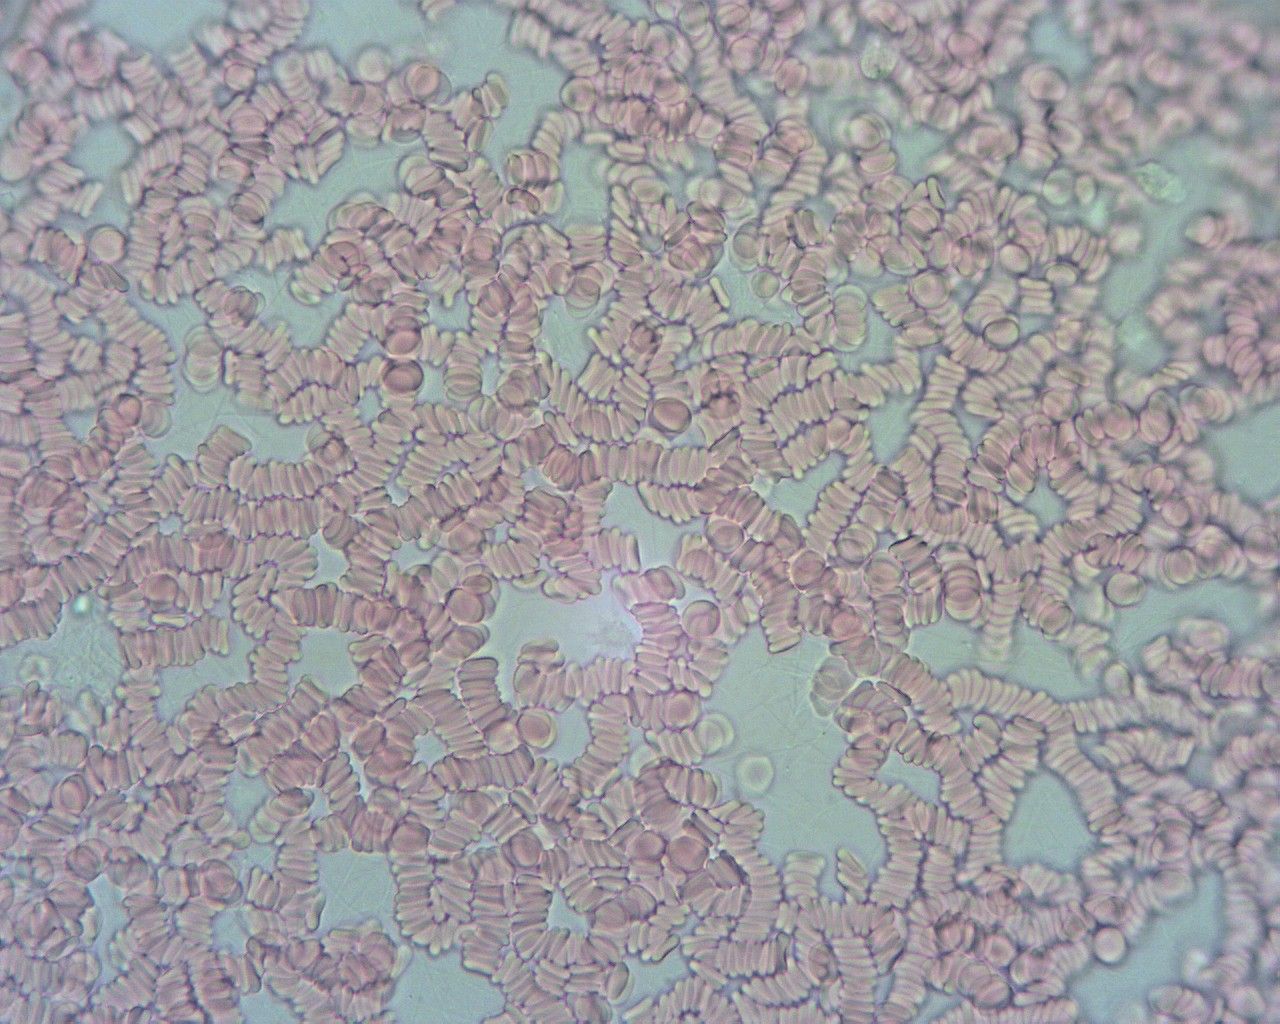 Zdjęcie krwi spod mikroskopu. Widać mocno polepioną i gęsta krew. 